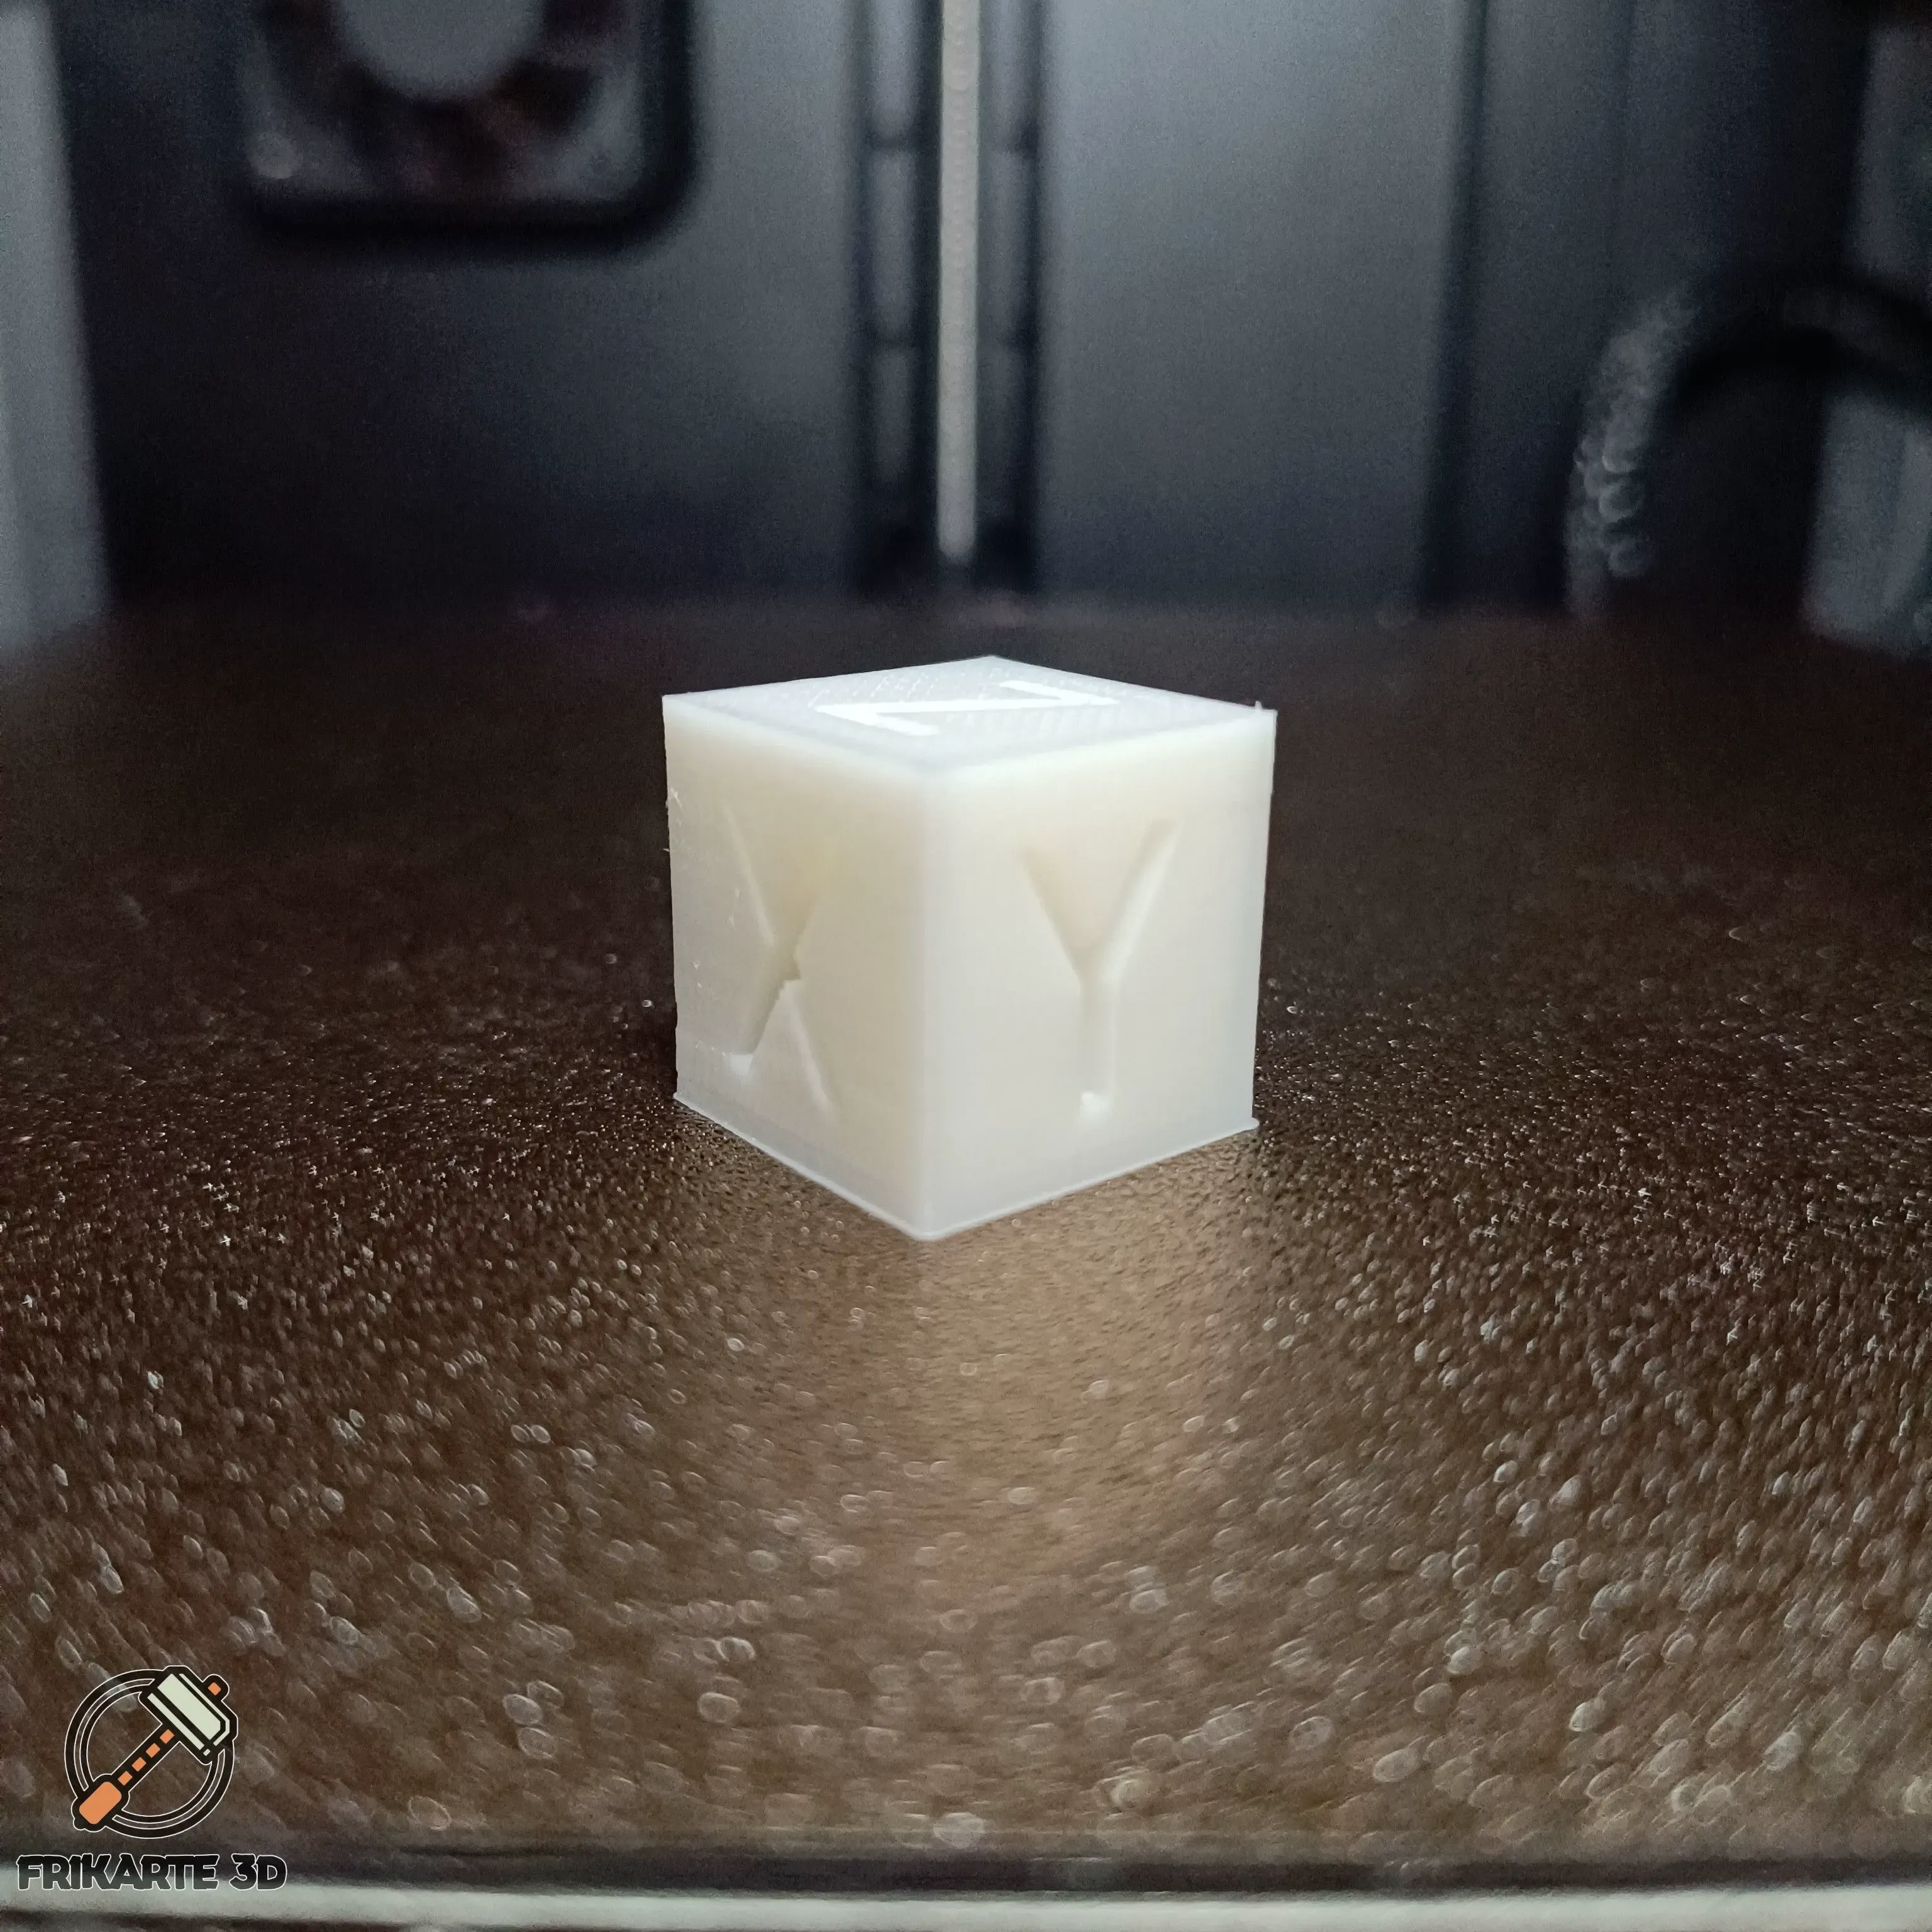 Frikarte3D XYZ Calibration Cube Plus